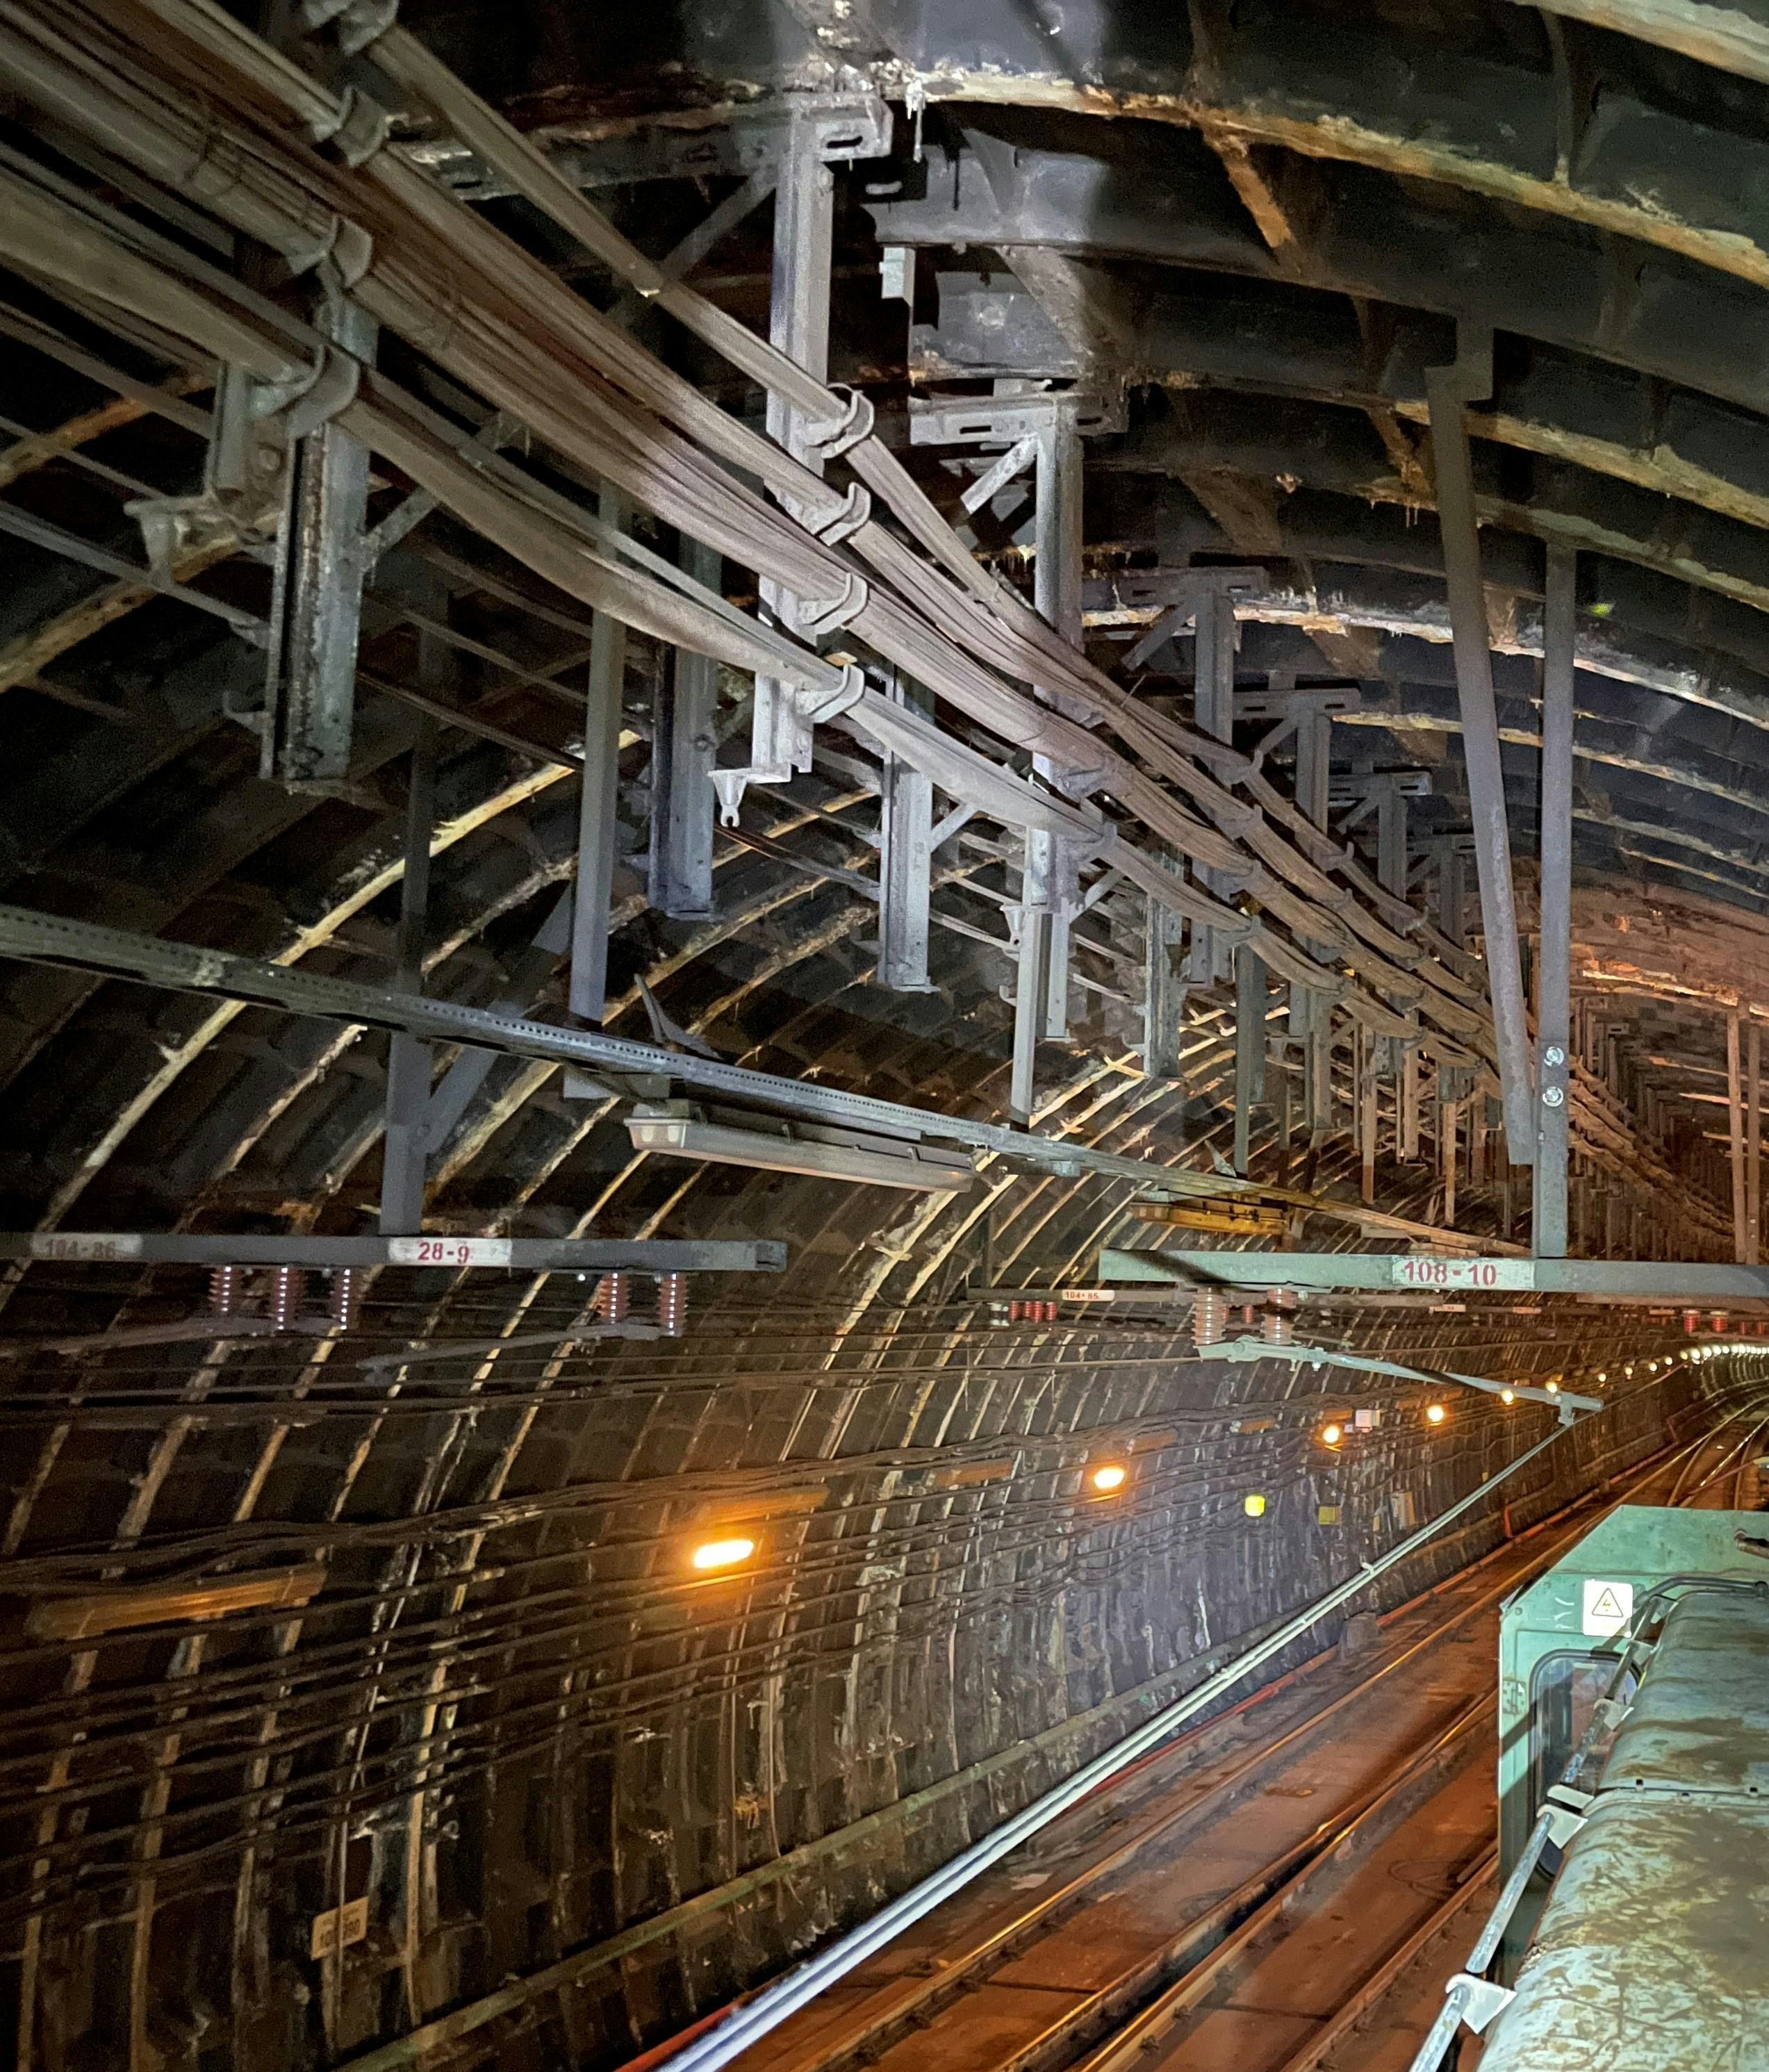 港铁解释，今次工程位于油麻地站附近的交叉渡线，隧道顶部高7米，比一般隧道高，且须要更换逾50个电缆吊架，工程较复杂，须一气呵成下完成，故无法在一般收车后的「黄金两小时」内进行更新。（港铁提供）